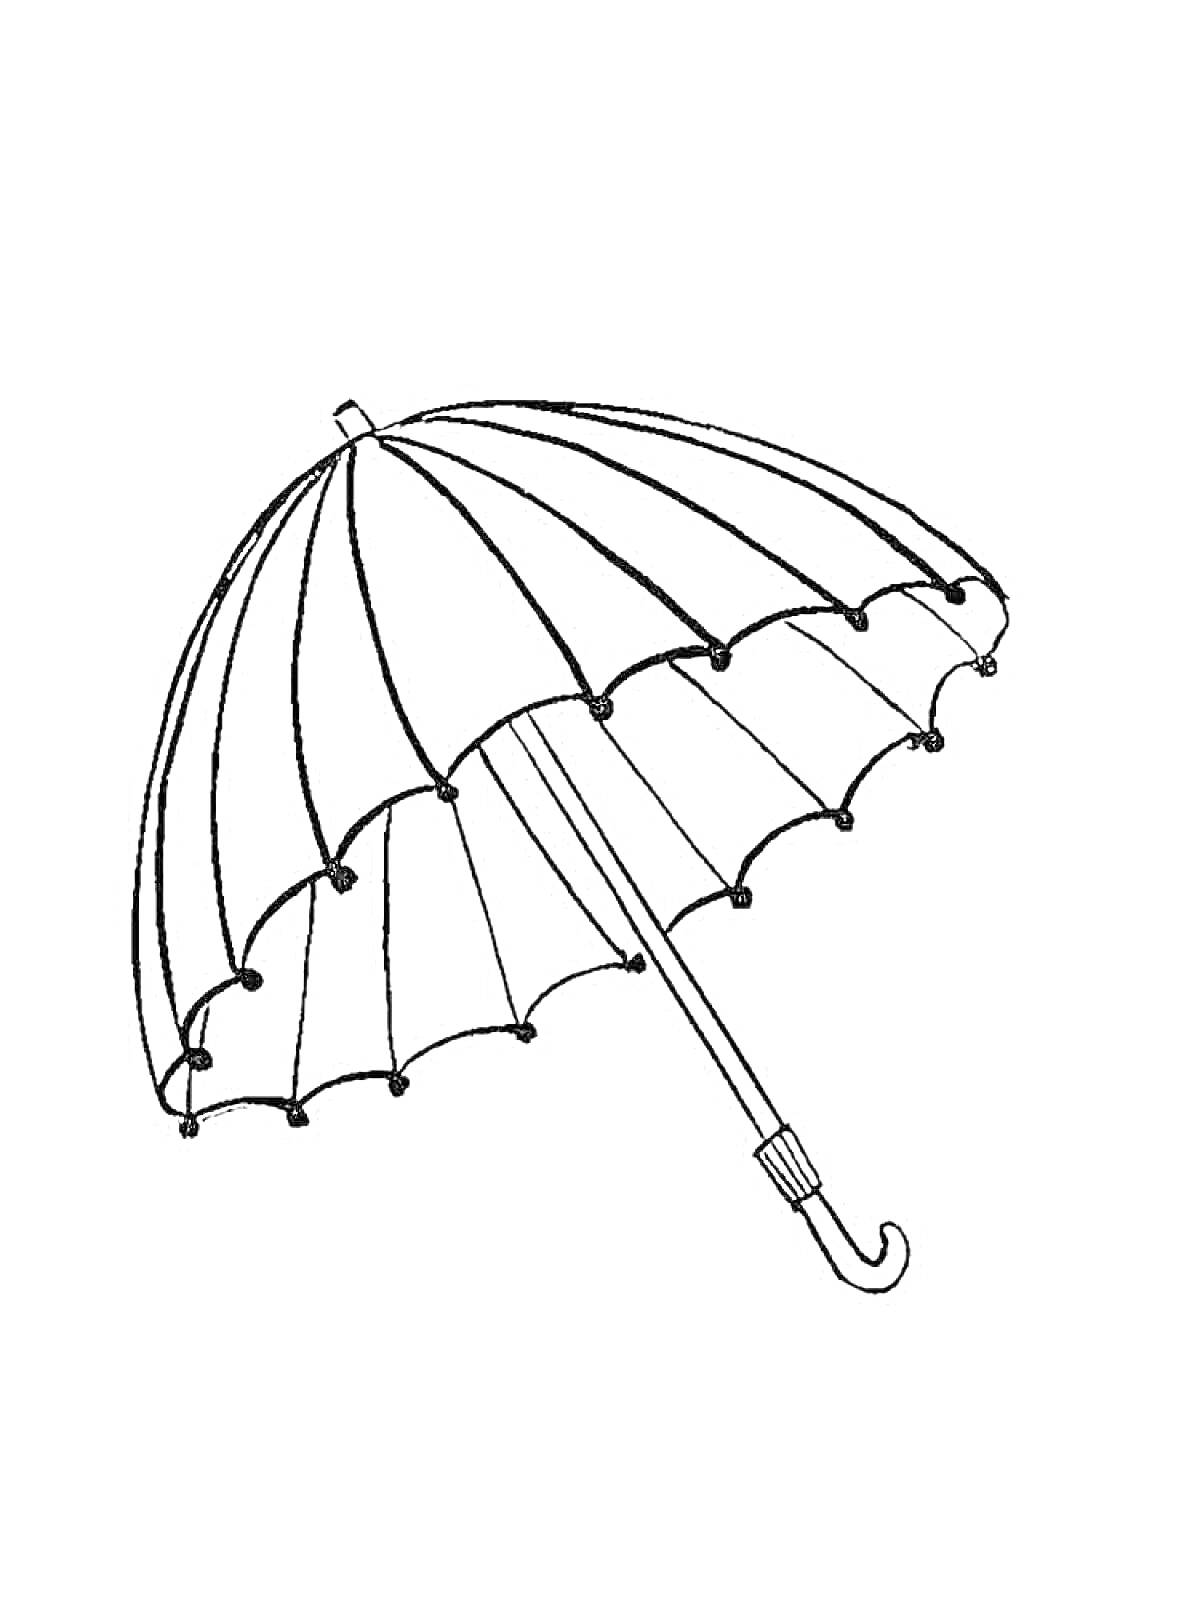 Раскраска Раскраска с изображением зонтика с длинной ручкой и изогнутым наконечником